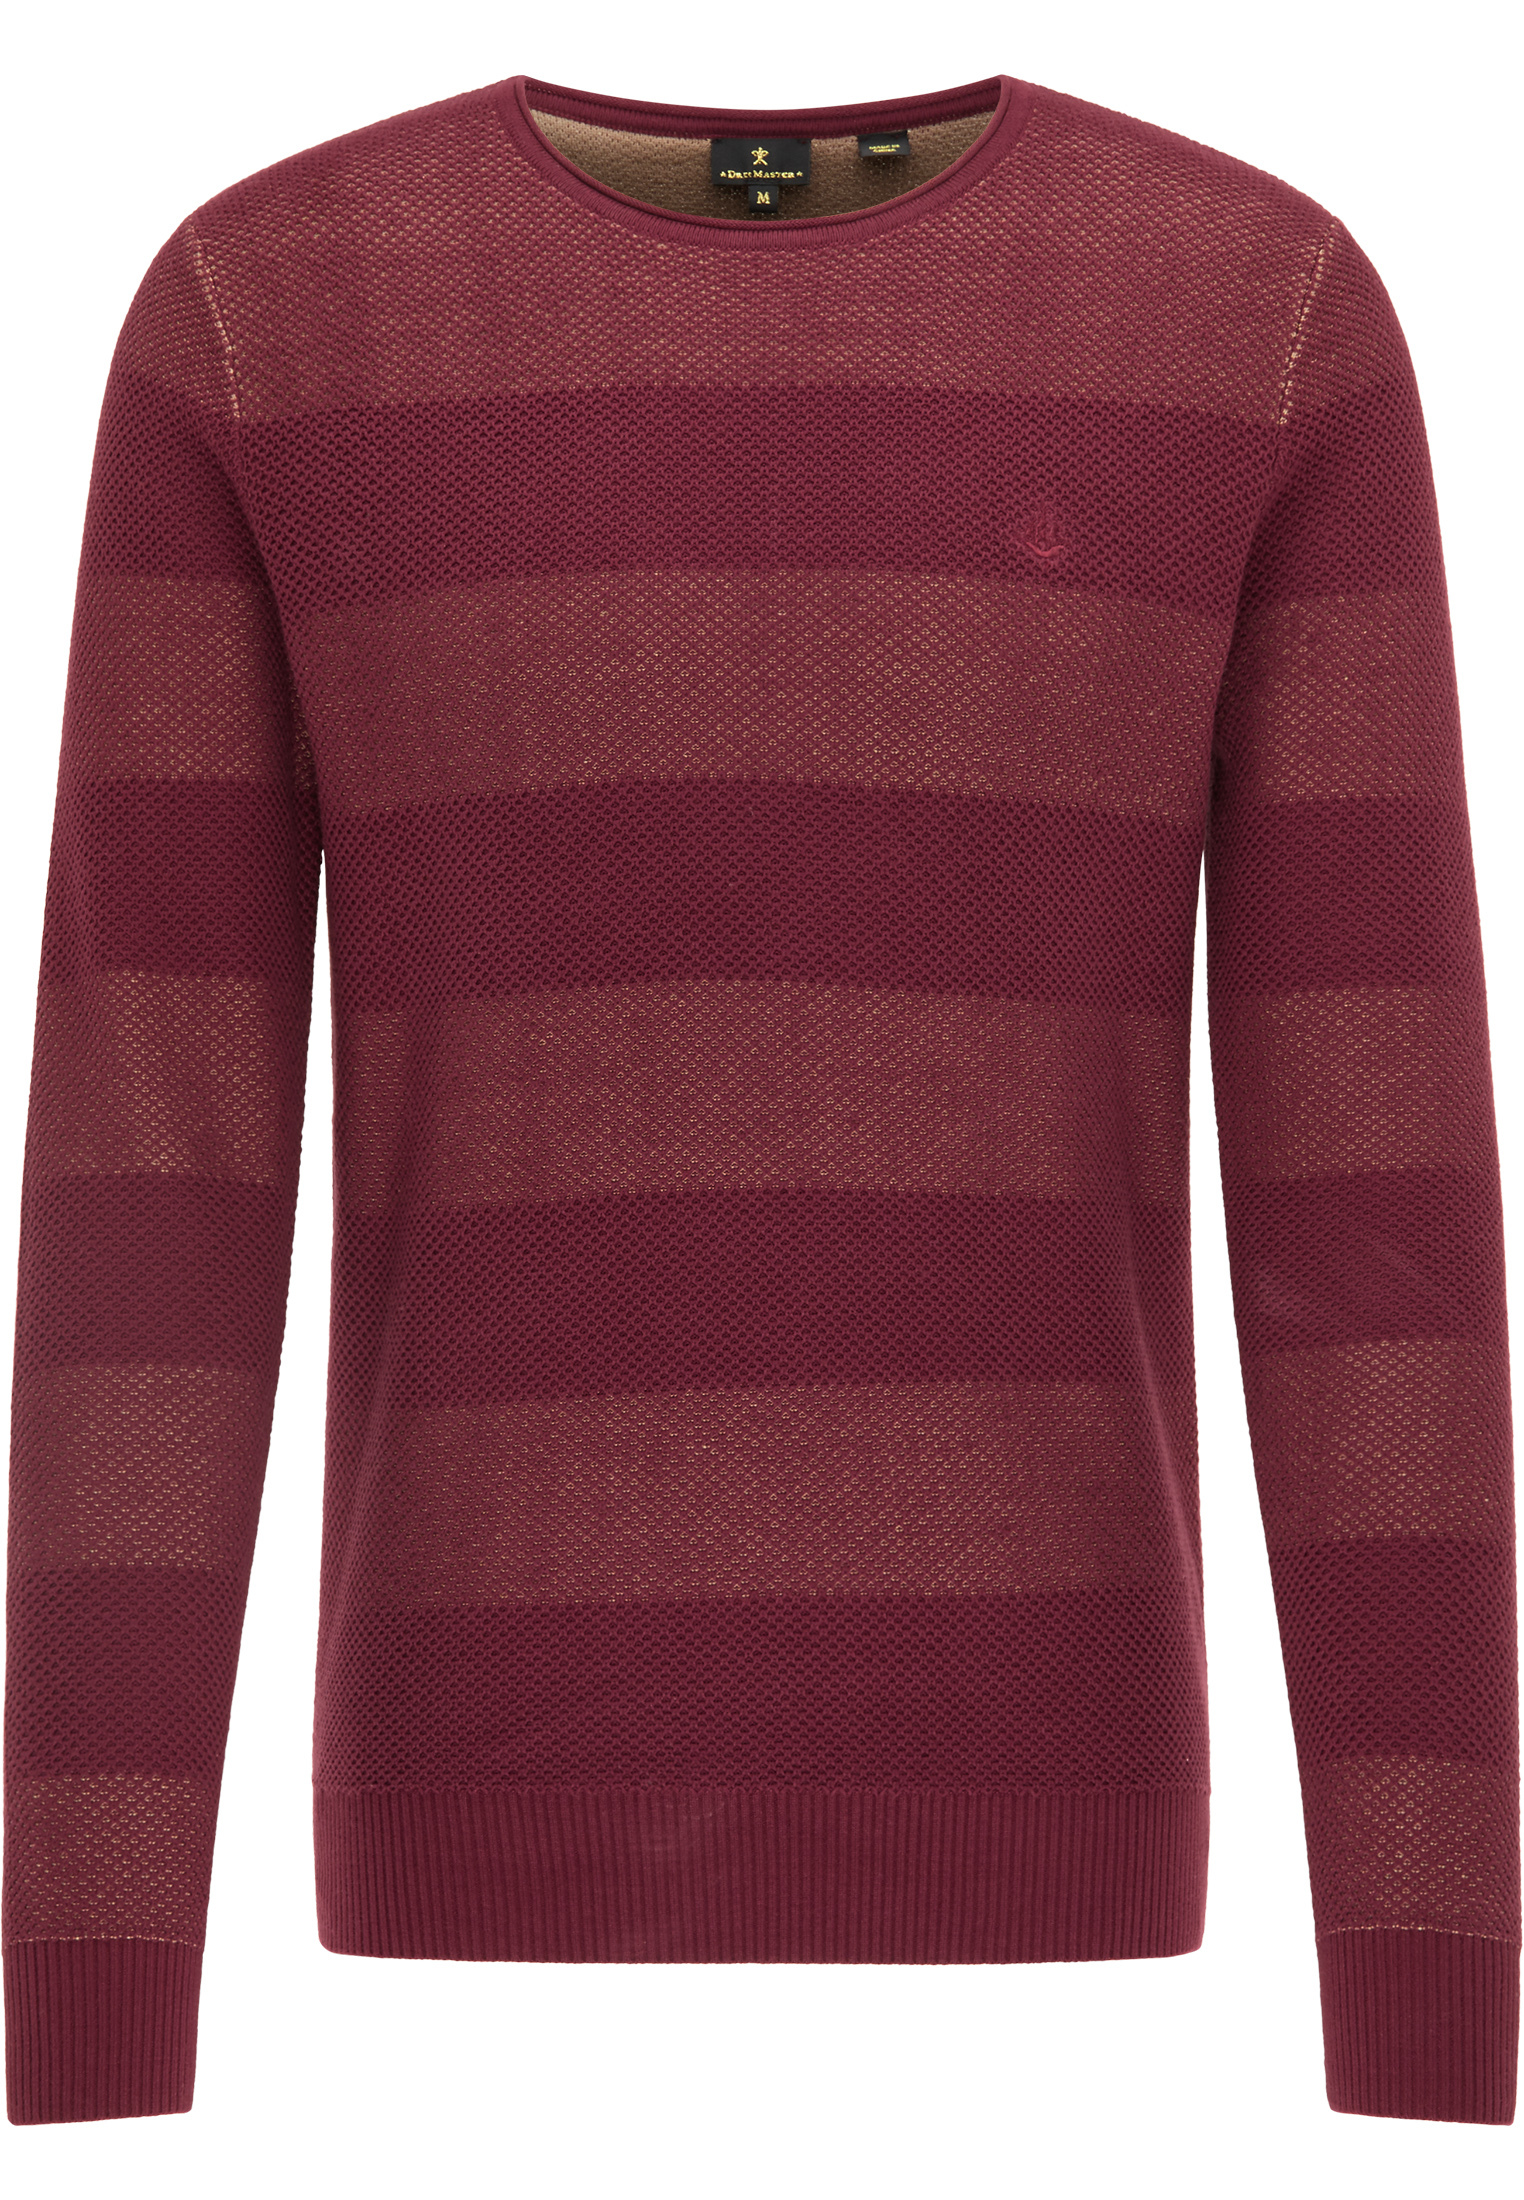 DreiMaster Vintage Sweter w kolorze Ciemnoczerwony, Merlotm 